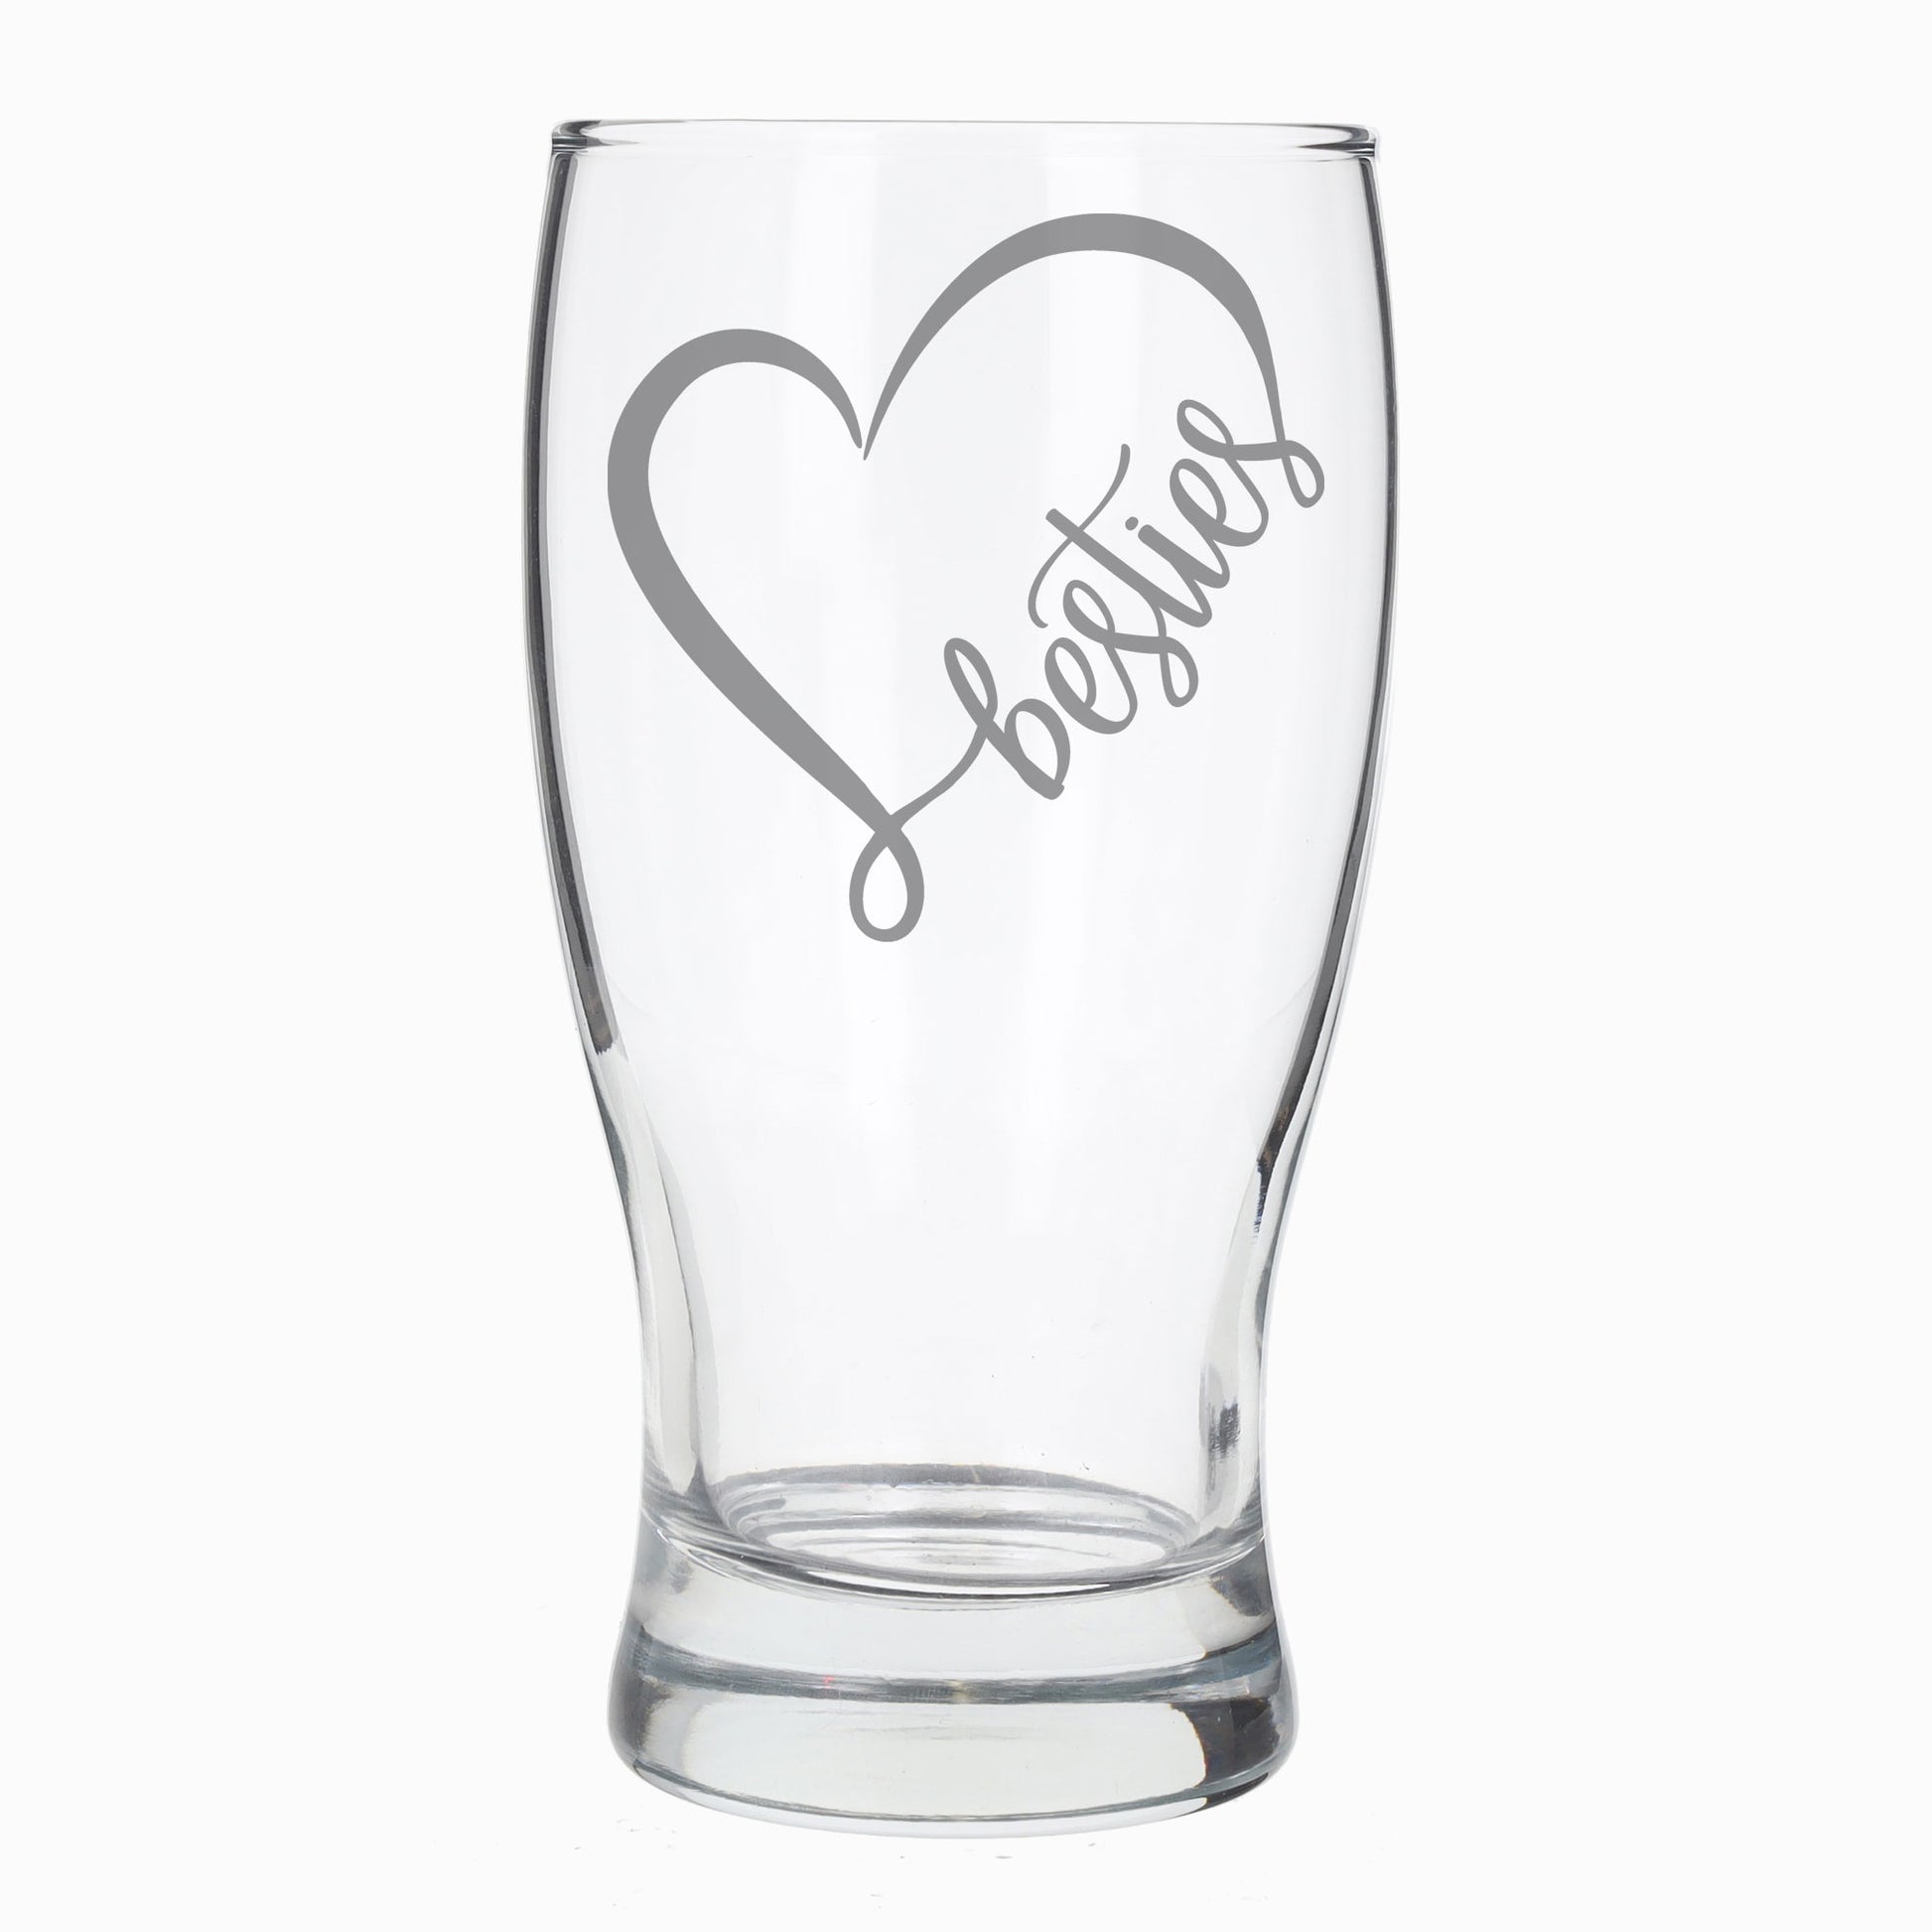 Besties Engraved Beer Pint Glass and/or Coaster Set  - Always Looking Good -   